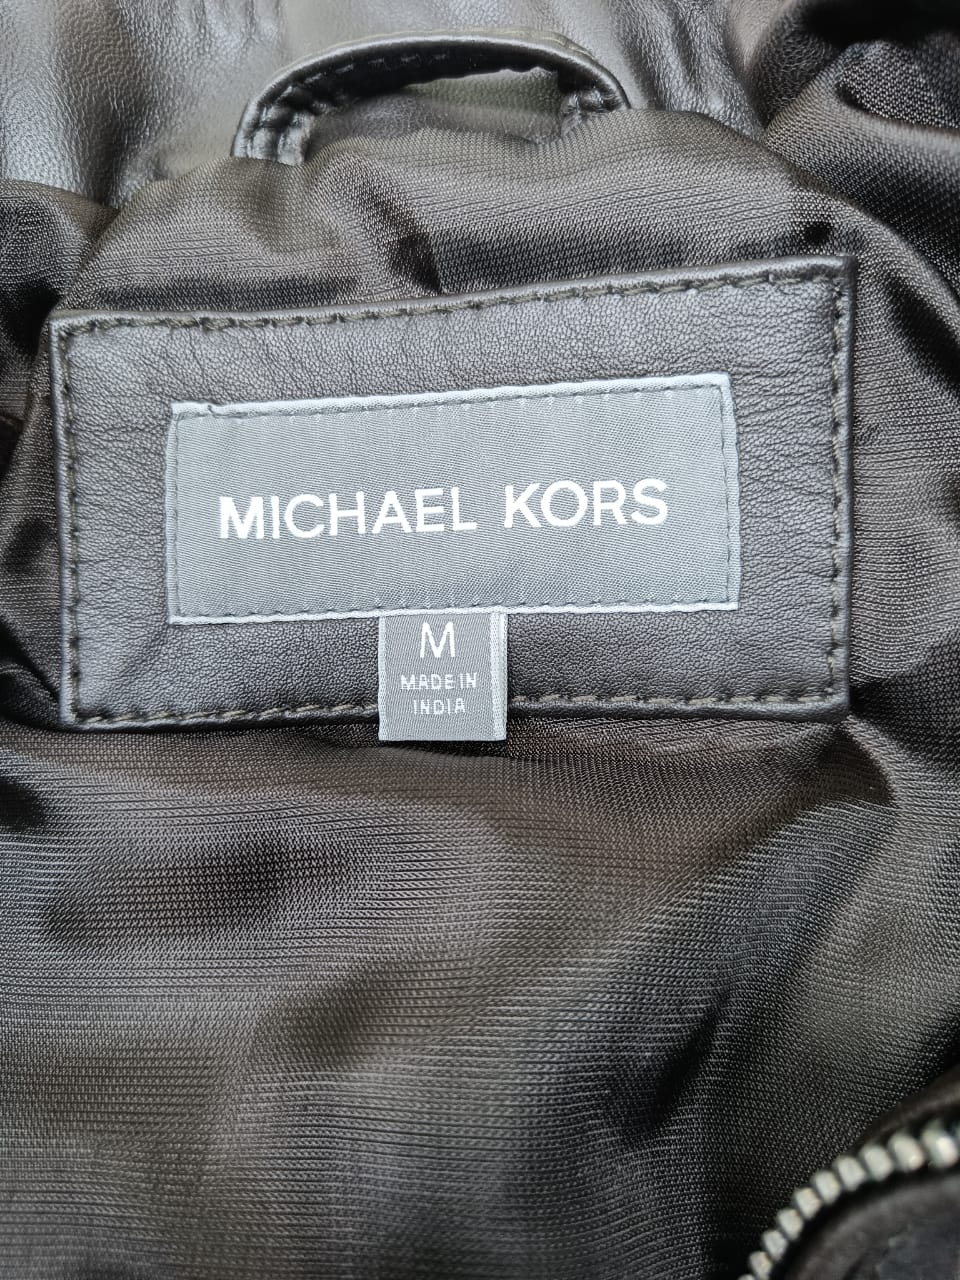 CIM KM Brown Colour Genuine Leather Surplus Men’s Jacket